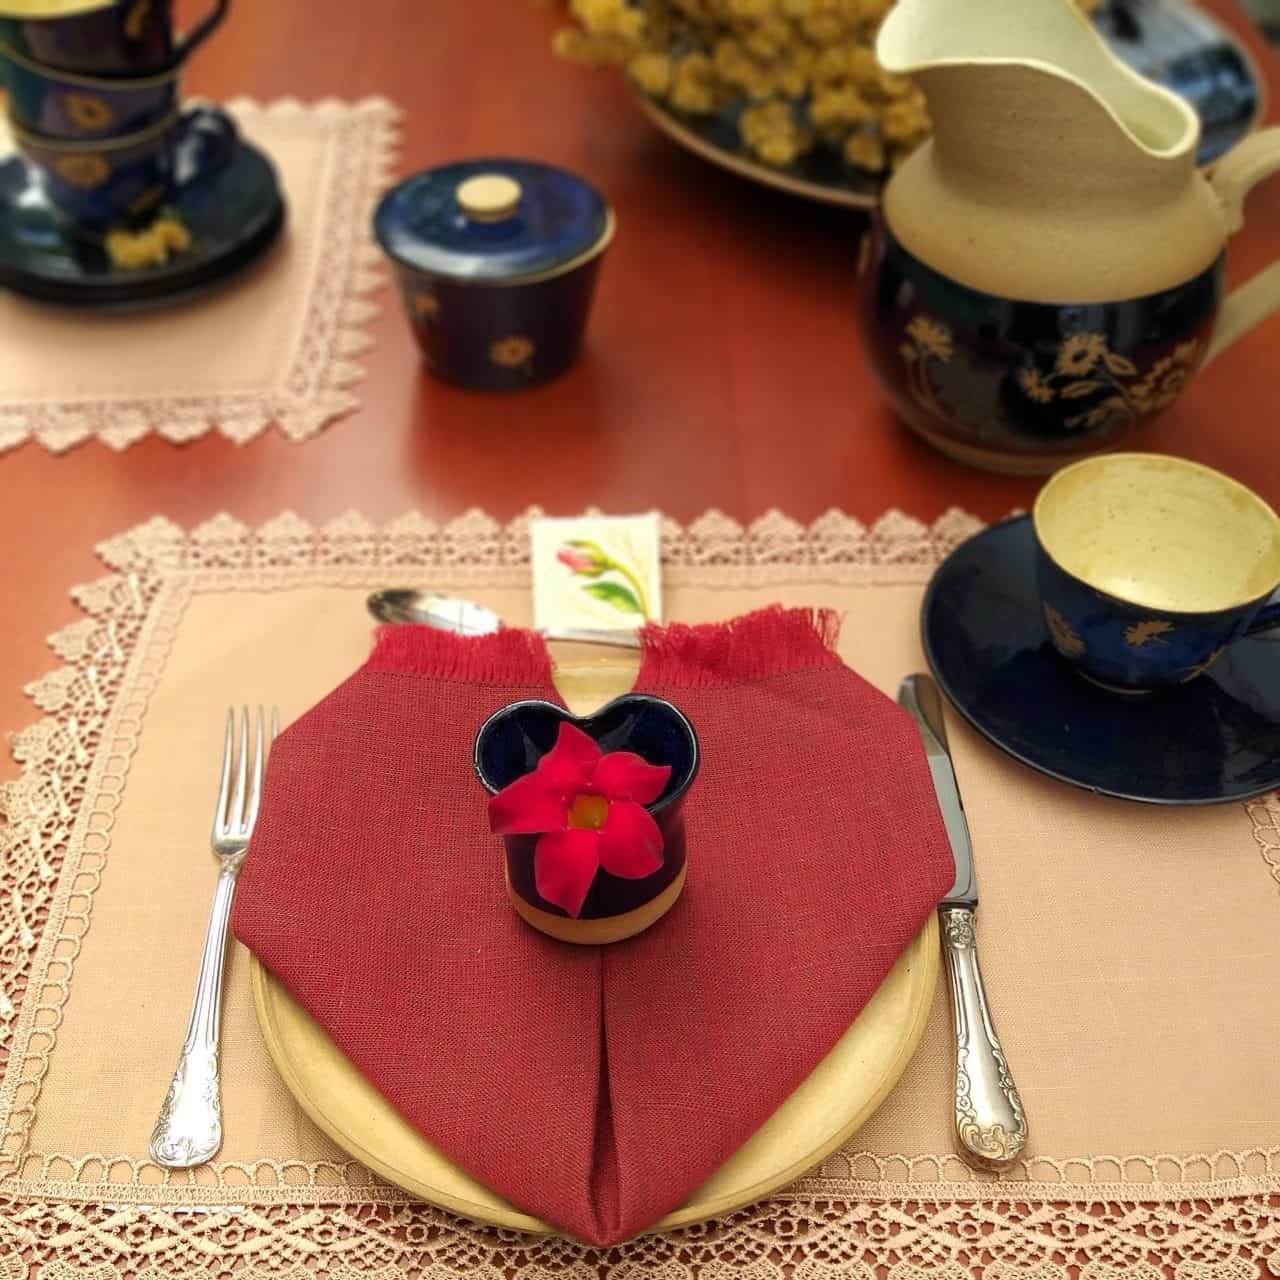 Lugar na mesa posta para o Dia das Mães com prato de cerâmica bege, xícara, jarra e manteigueira em bege e azul escuro, com desenhos de flores. Há um guardanapo vermelho, dobrado em forma de coração, em cima do prato. 